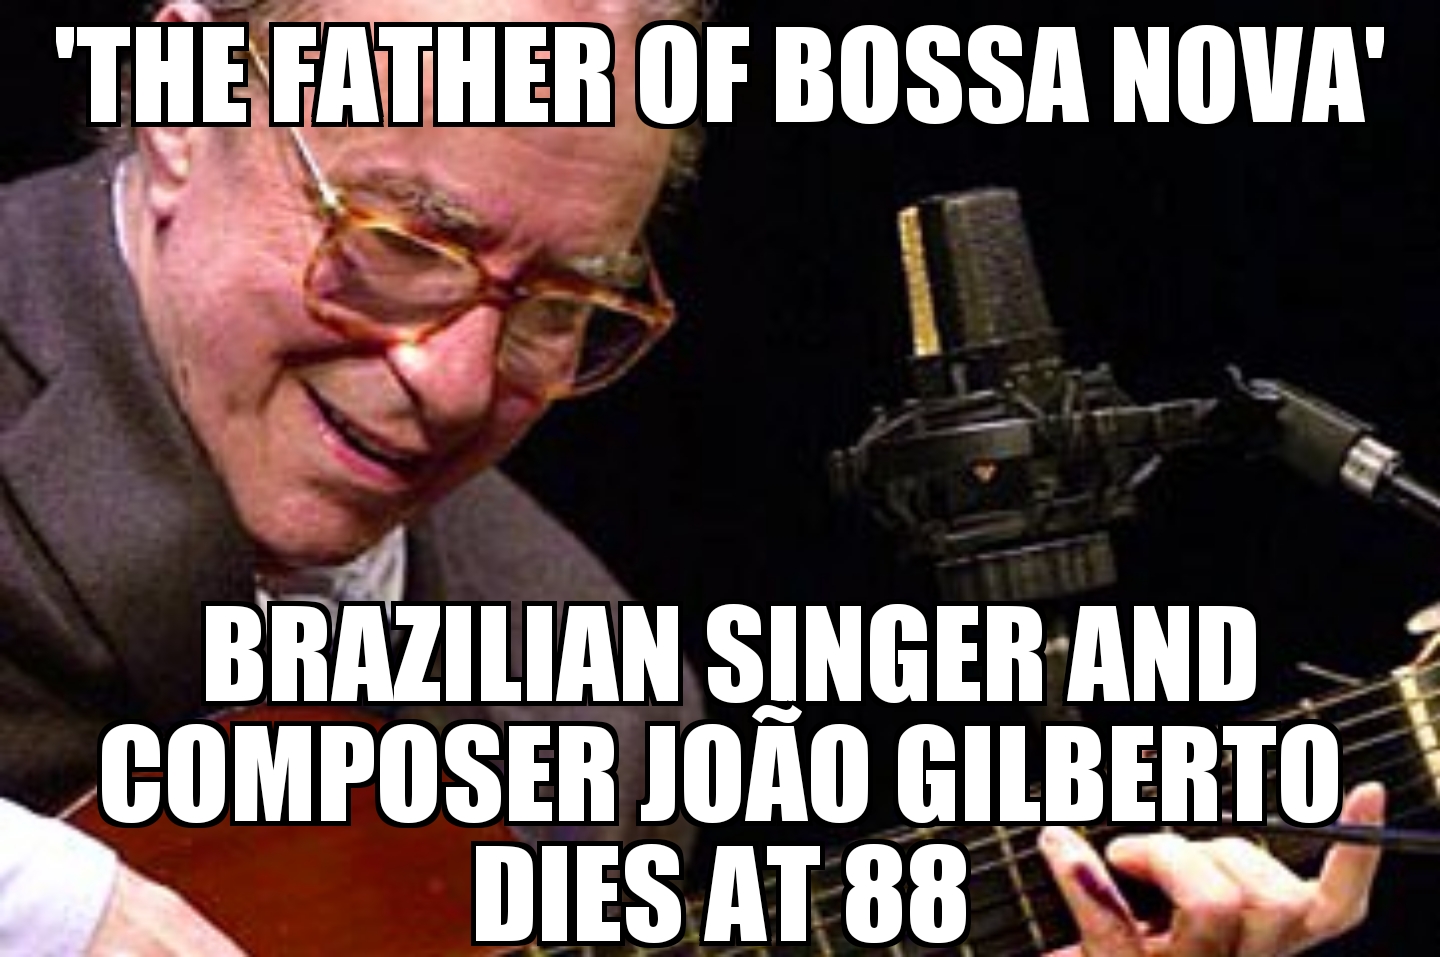 João Gilberto dies